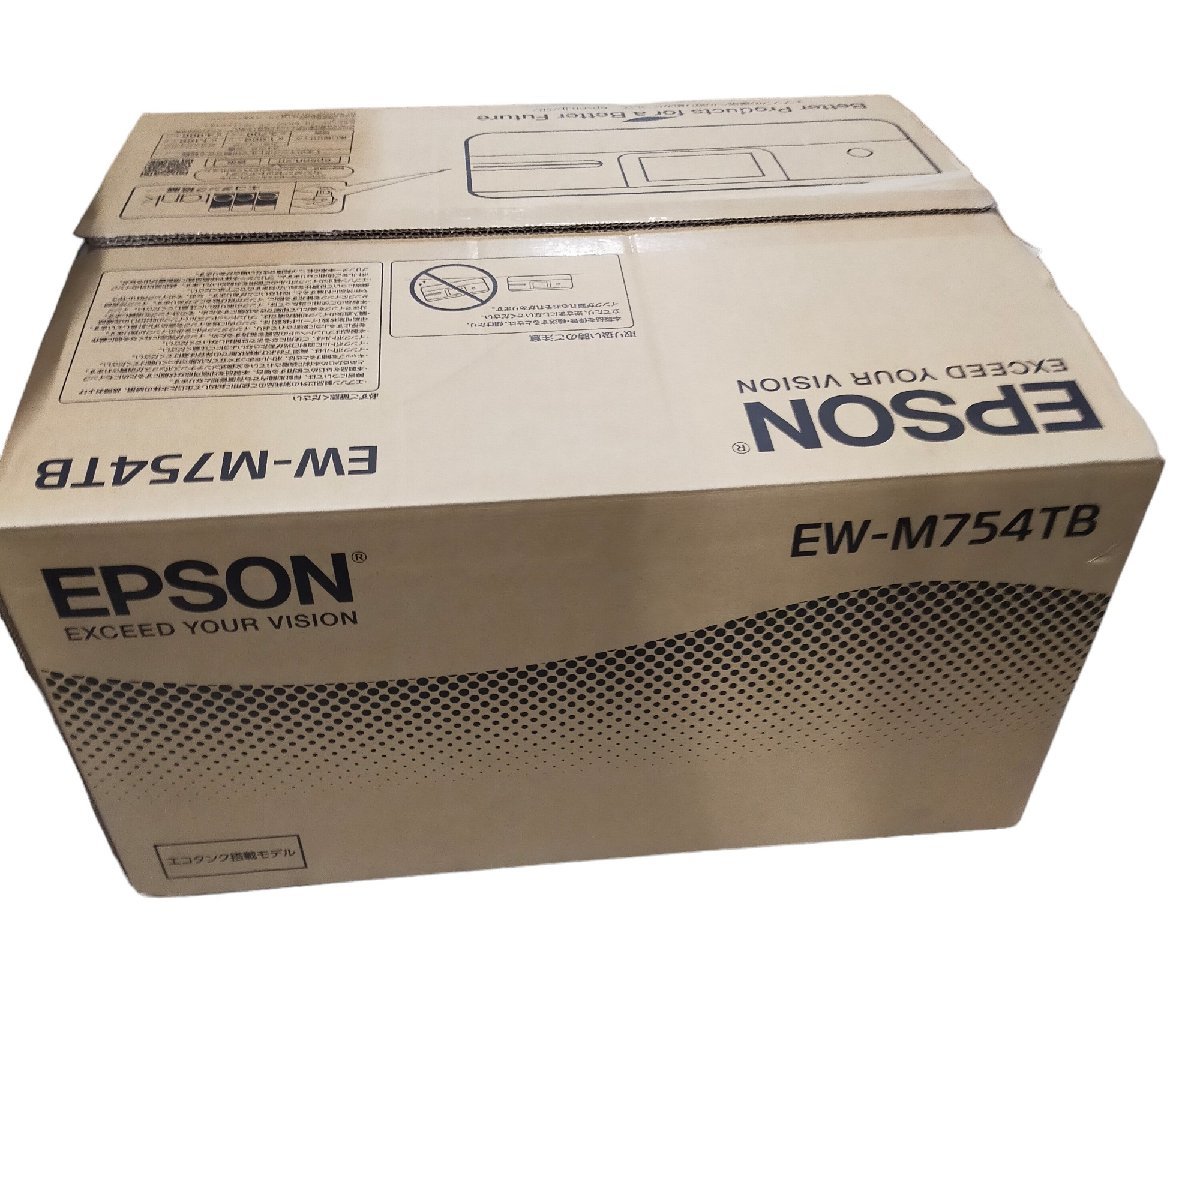 ◆未使用品◆EPSON エプソン プリンター エコタンク搭載 A4カラーインクジェット複合機 EW-M754TB1 2021年モデル 箱有 J52693NJ_画像5